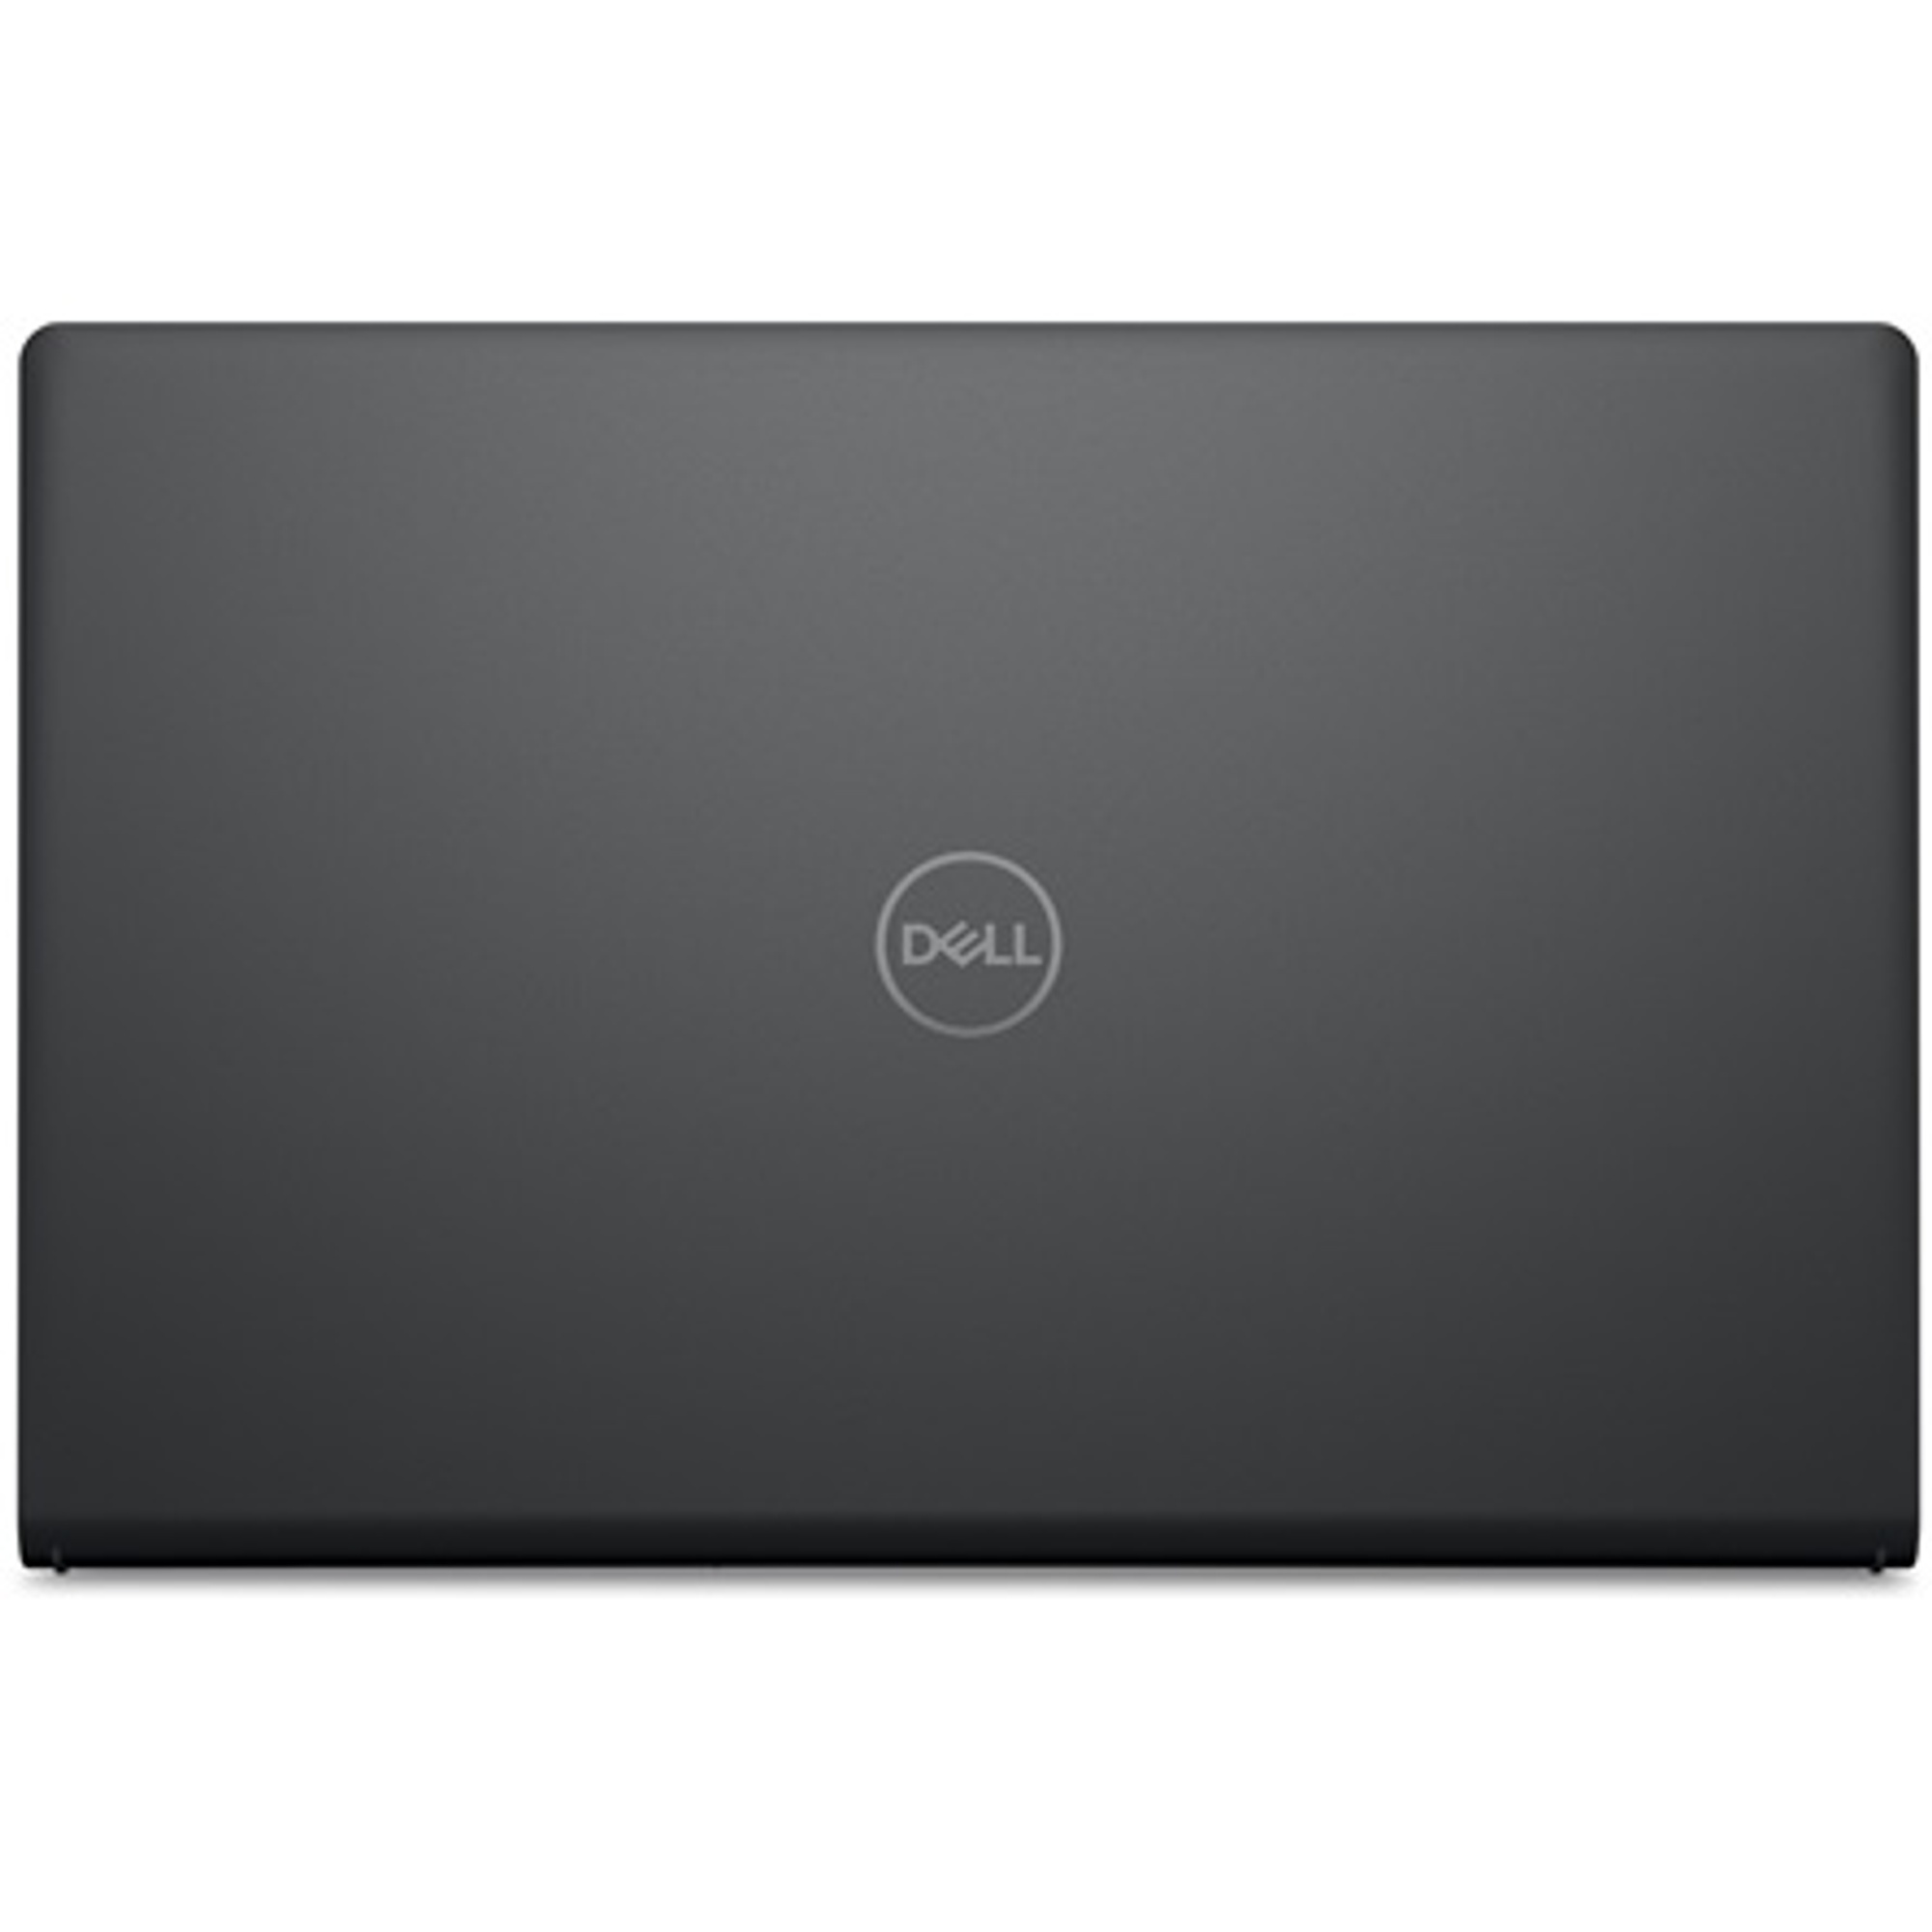 DELL V3520-14 Laptop / Notebook 5